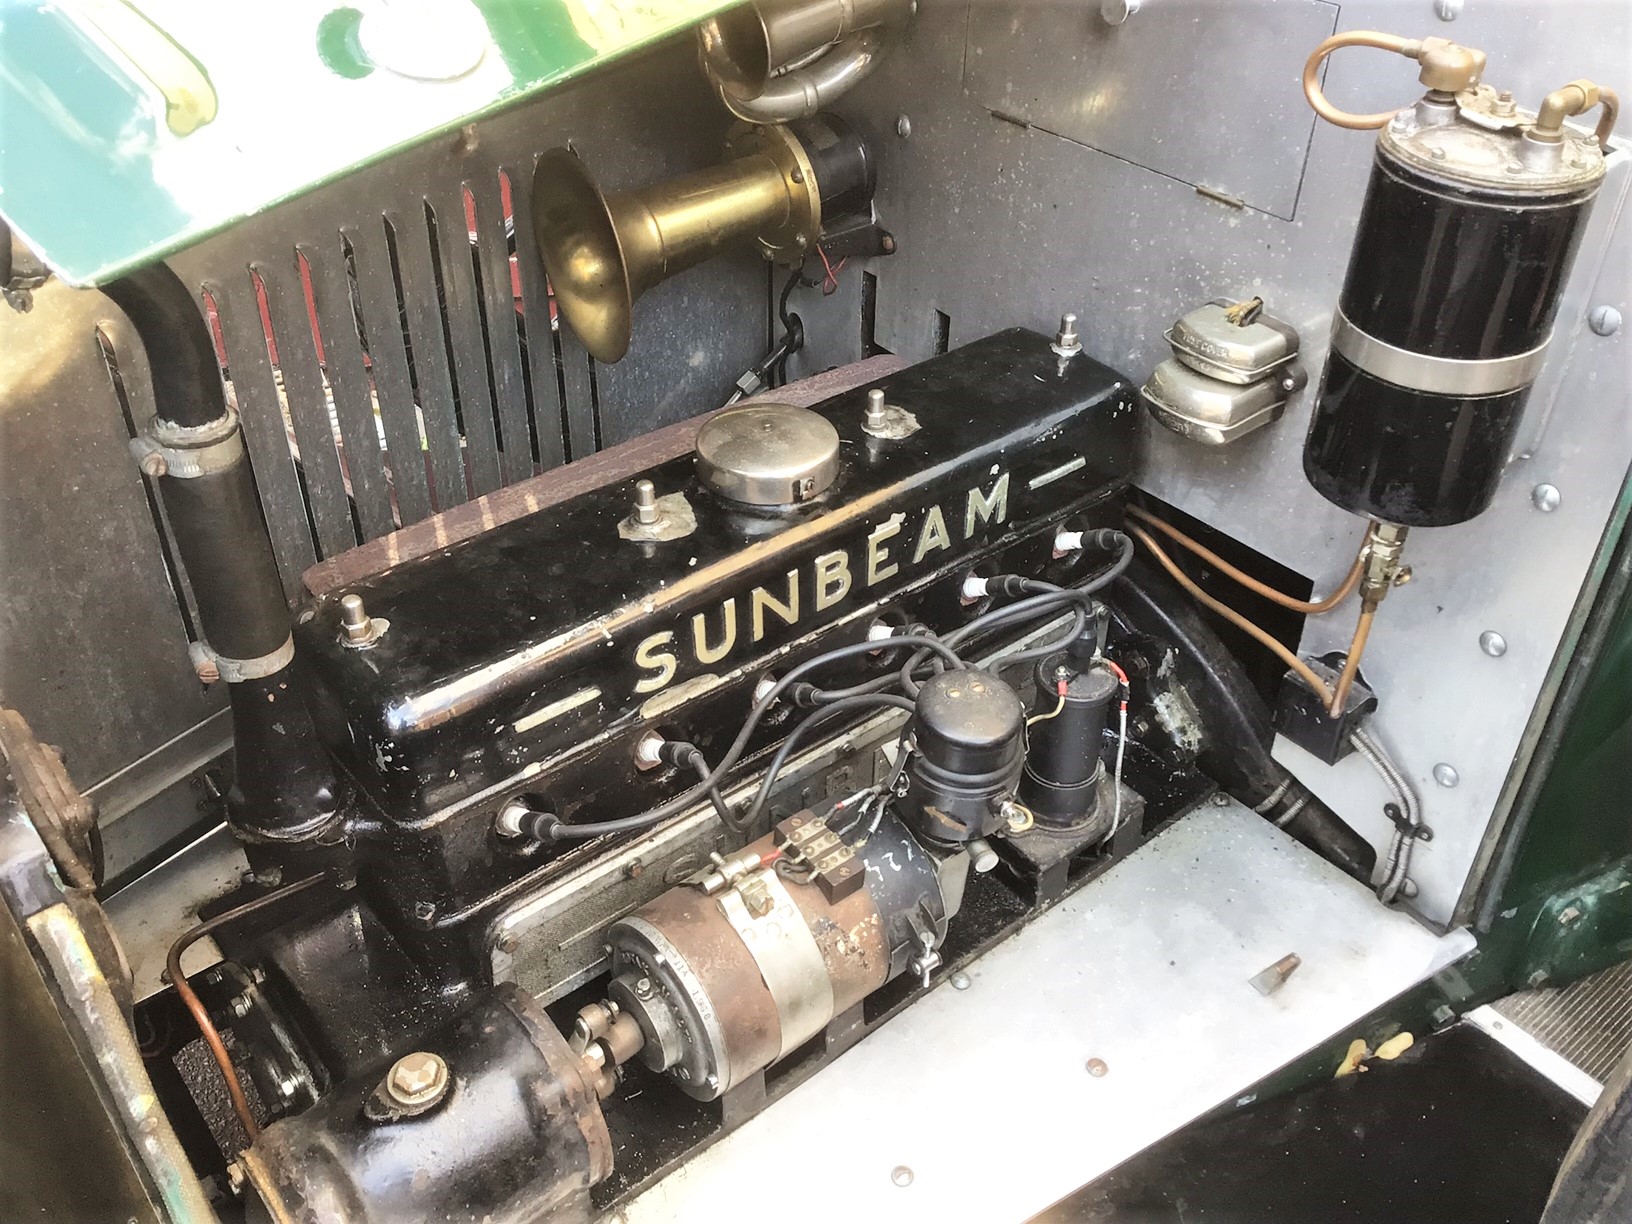 1928 Sunbeam 16.9 Tourer Reg. no. YX 607 Chassis no. 5820H Engine no. 5825H - Image 5 of 6